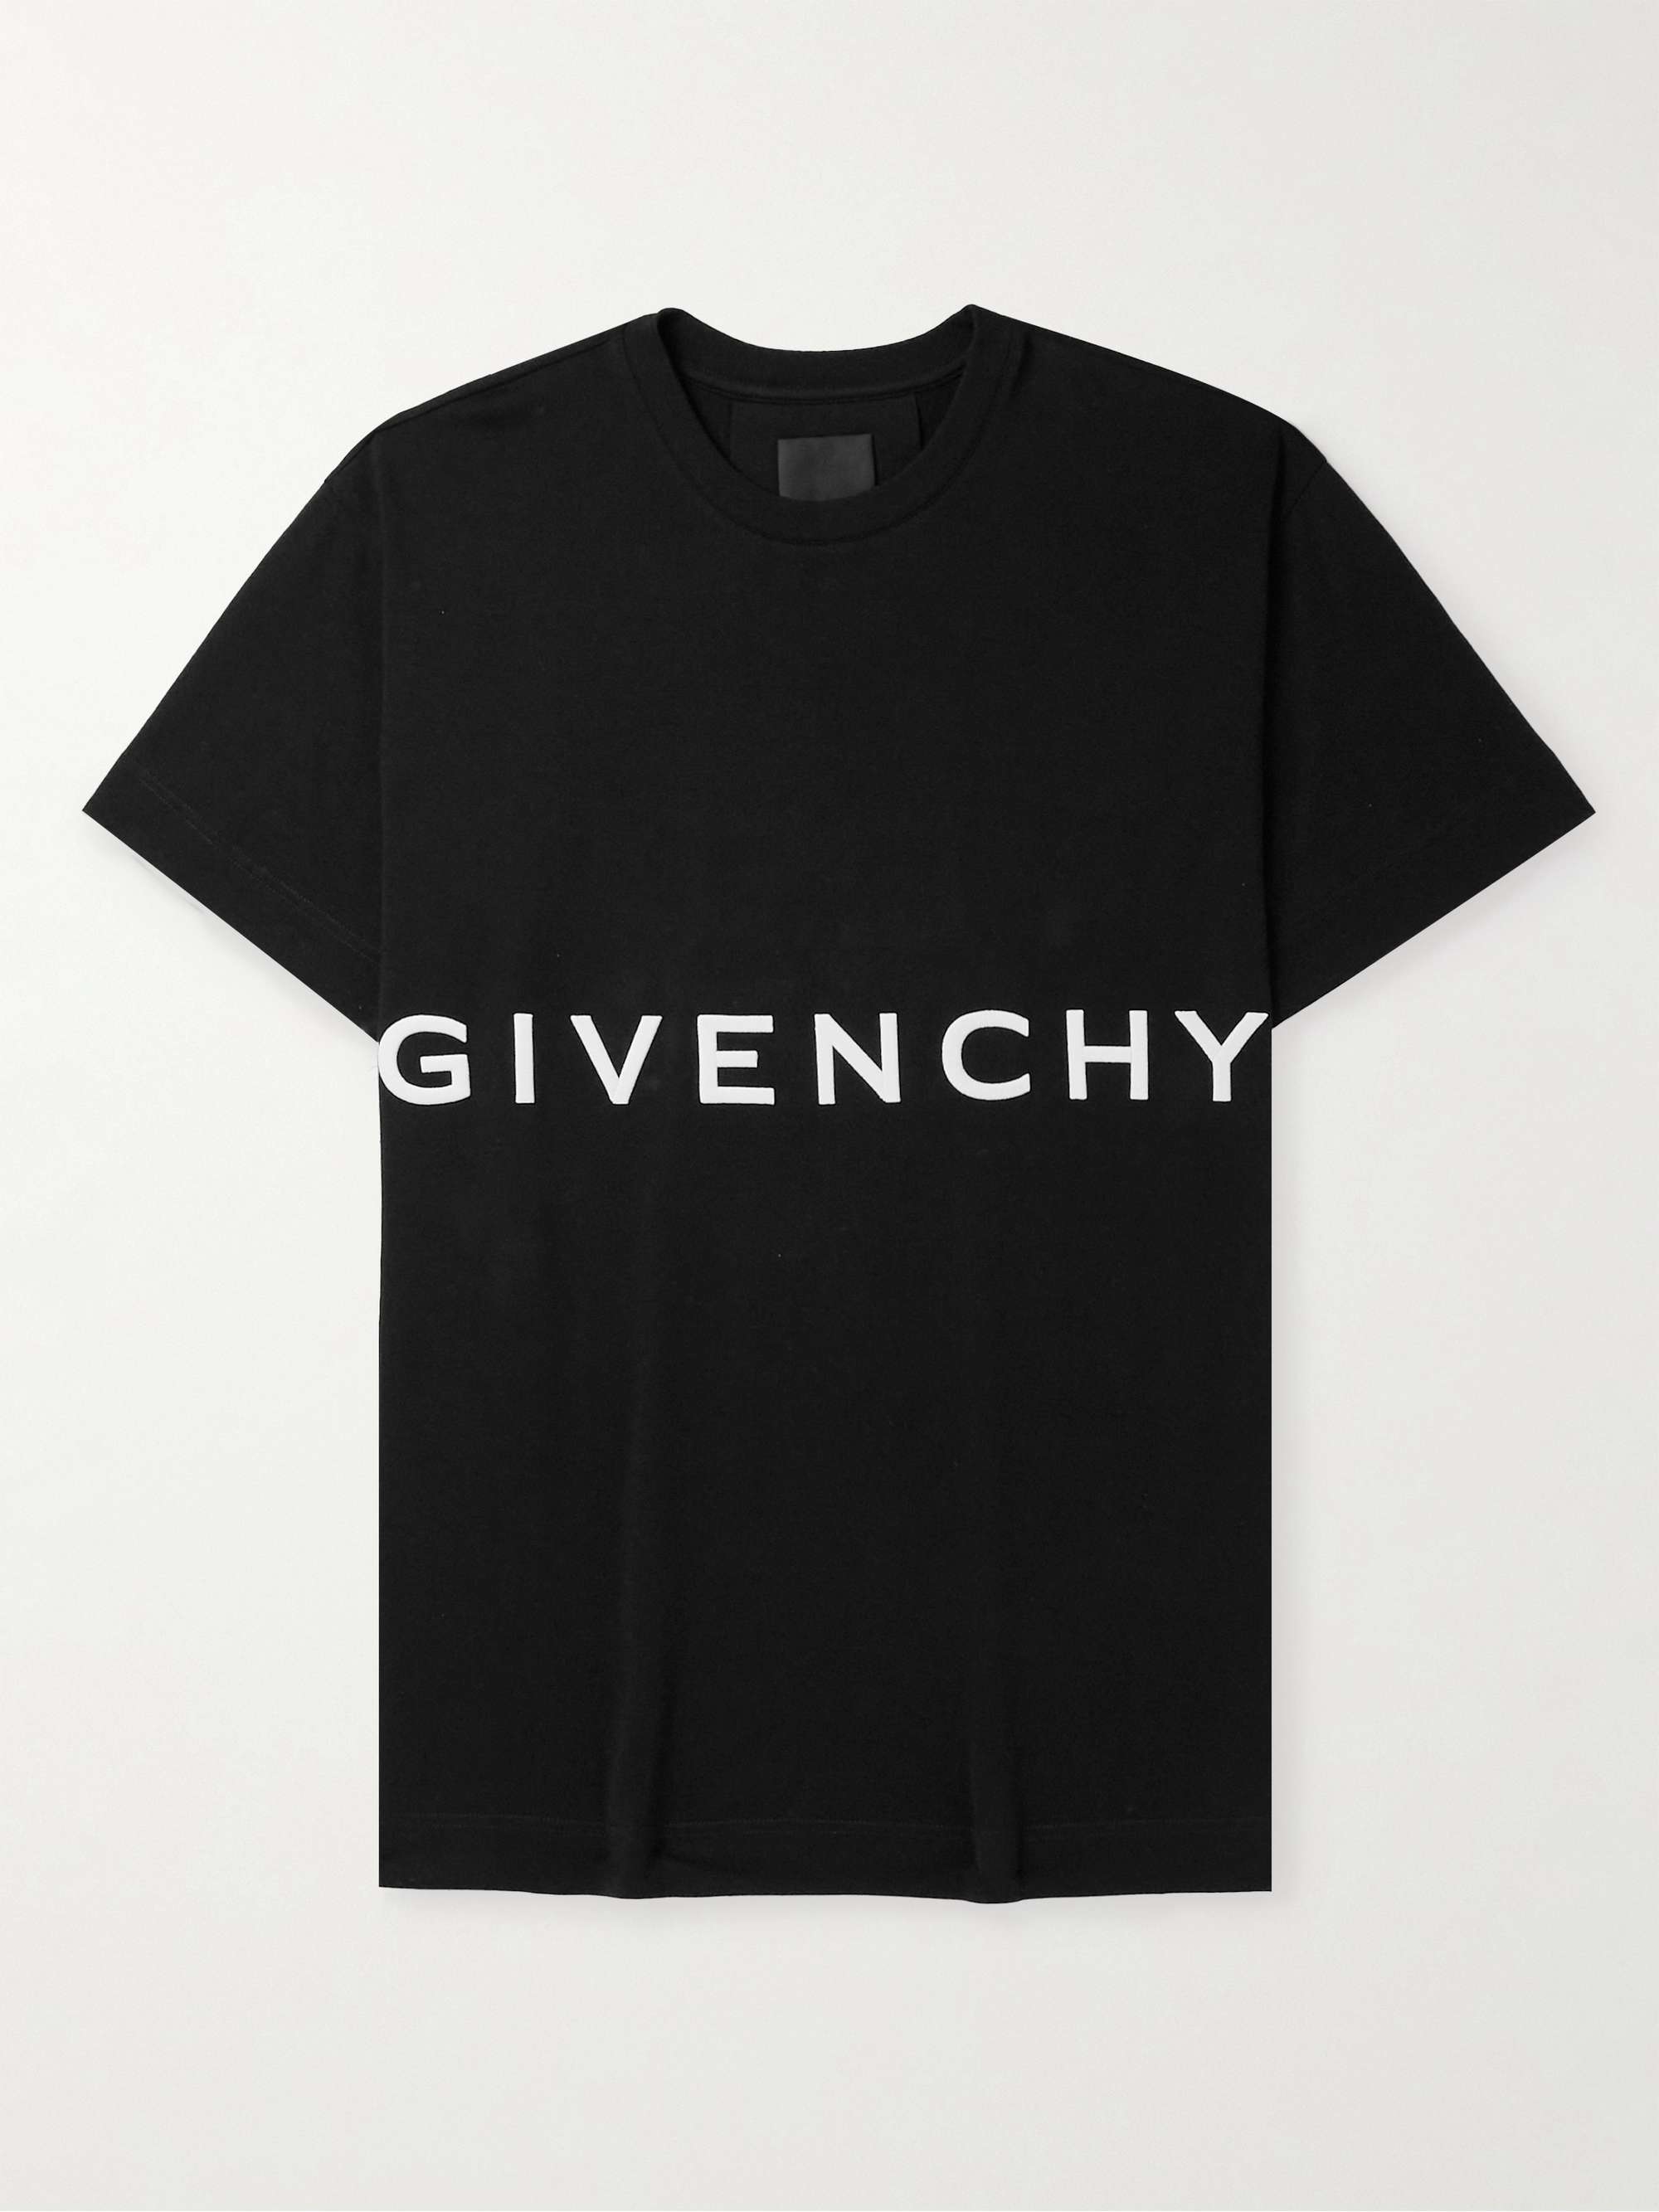 【新品未使用・タグ付き】GIVENCHY(ジバンシー) Tシャツ 黒 刺繍